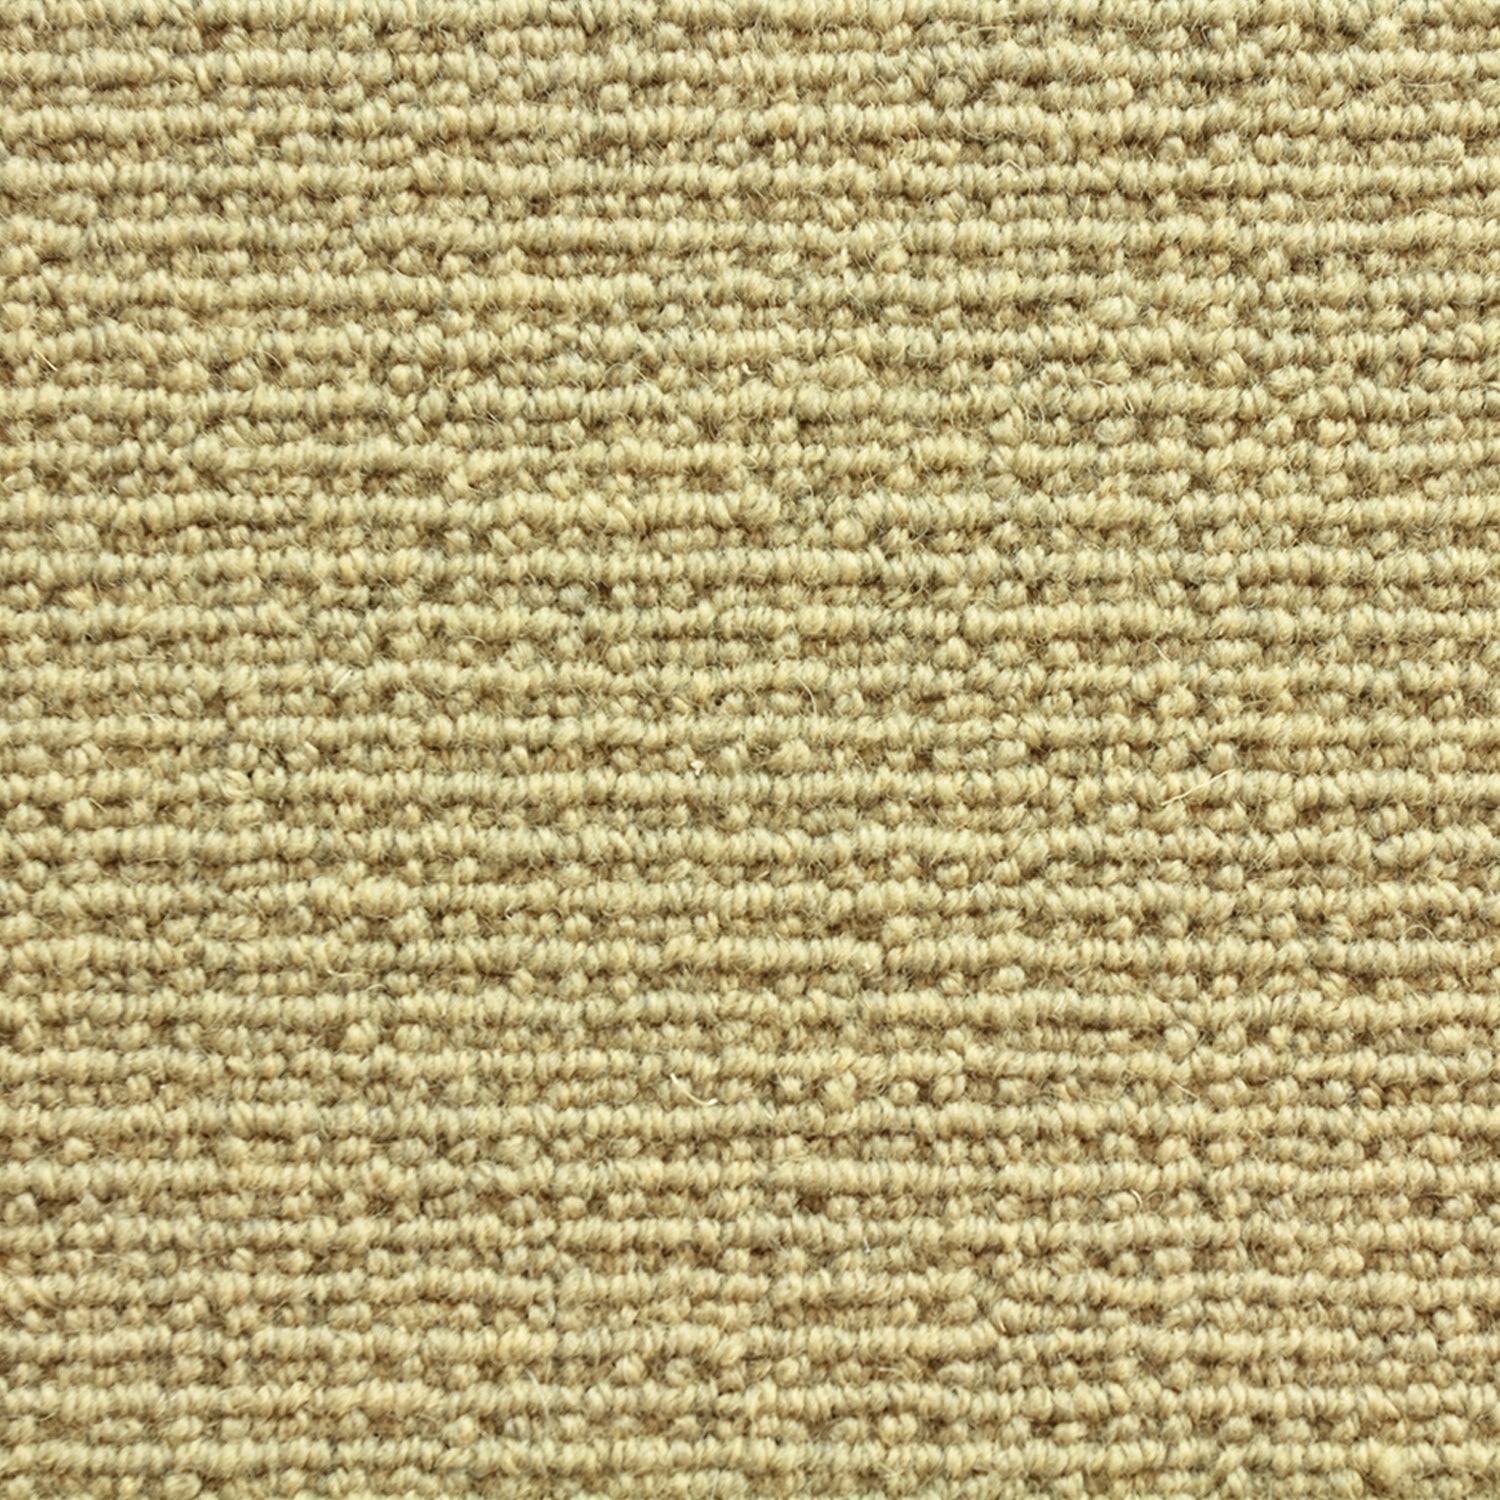 Wool broadloom carpet swatch in a chunky loop weave in mustard.